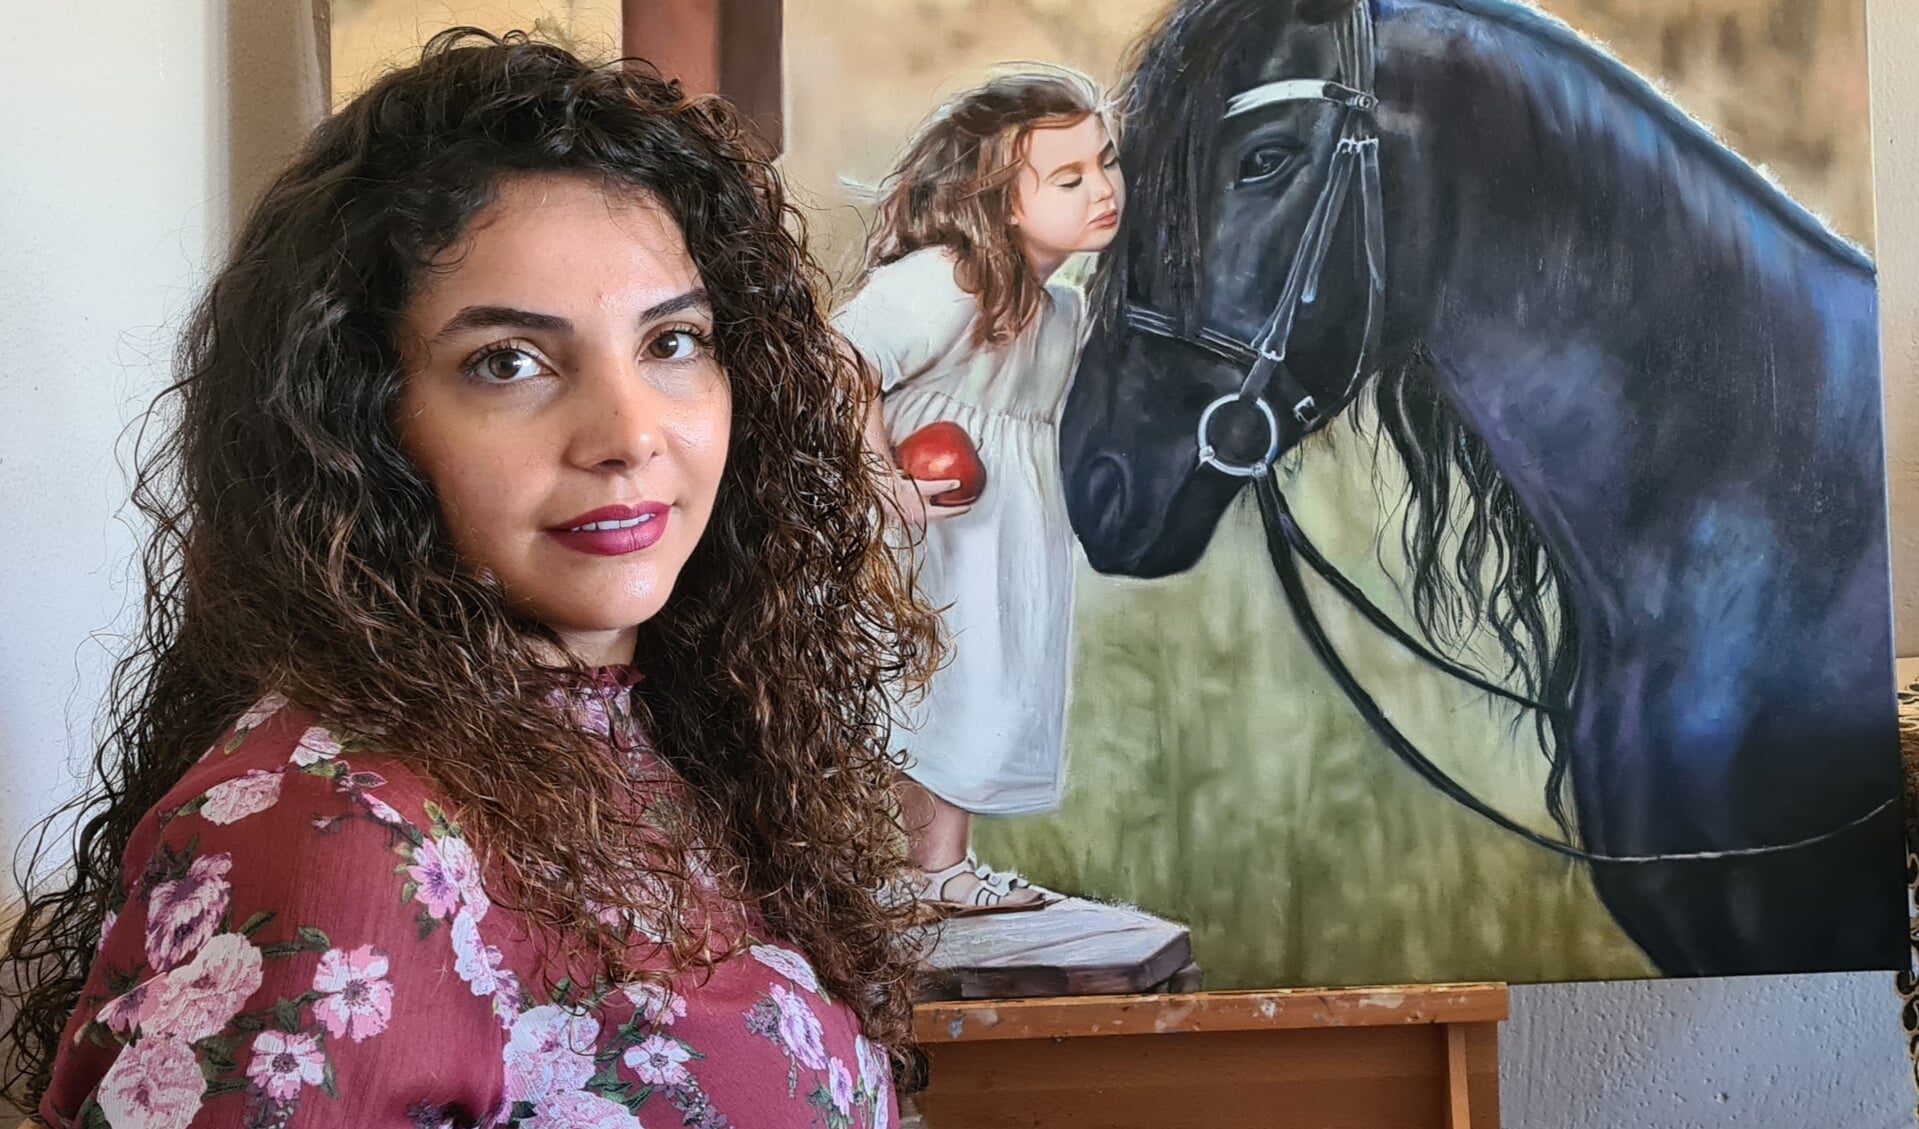 De jonge kunstenares Mahnaz exposeert tijdens de Kunstroute in het Behouden Huis. 